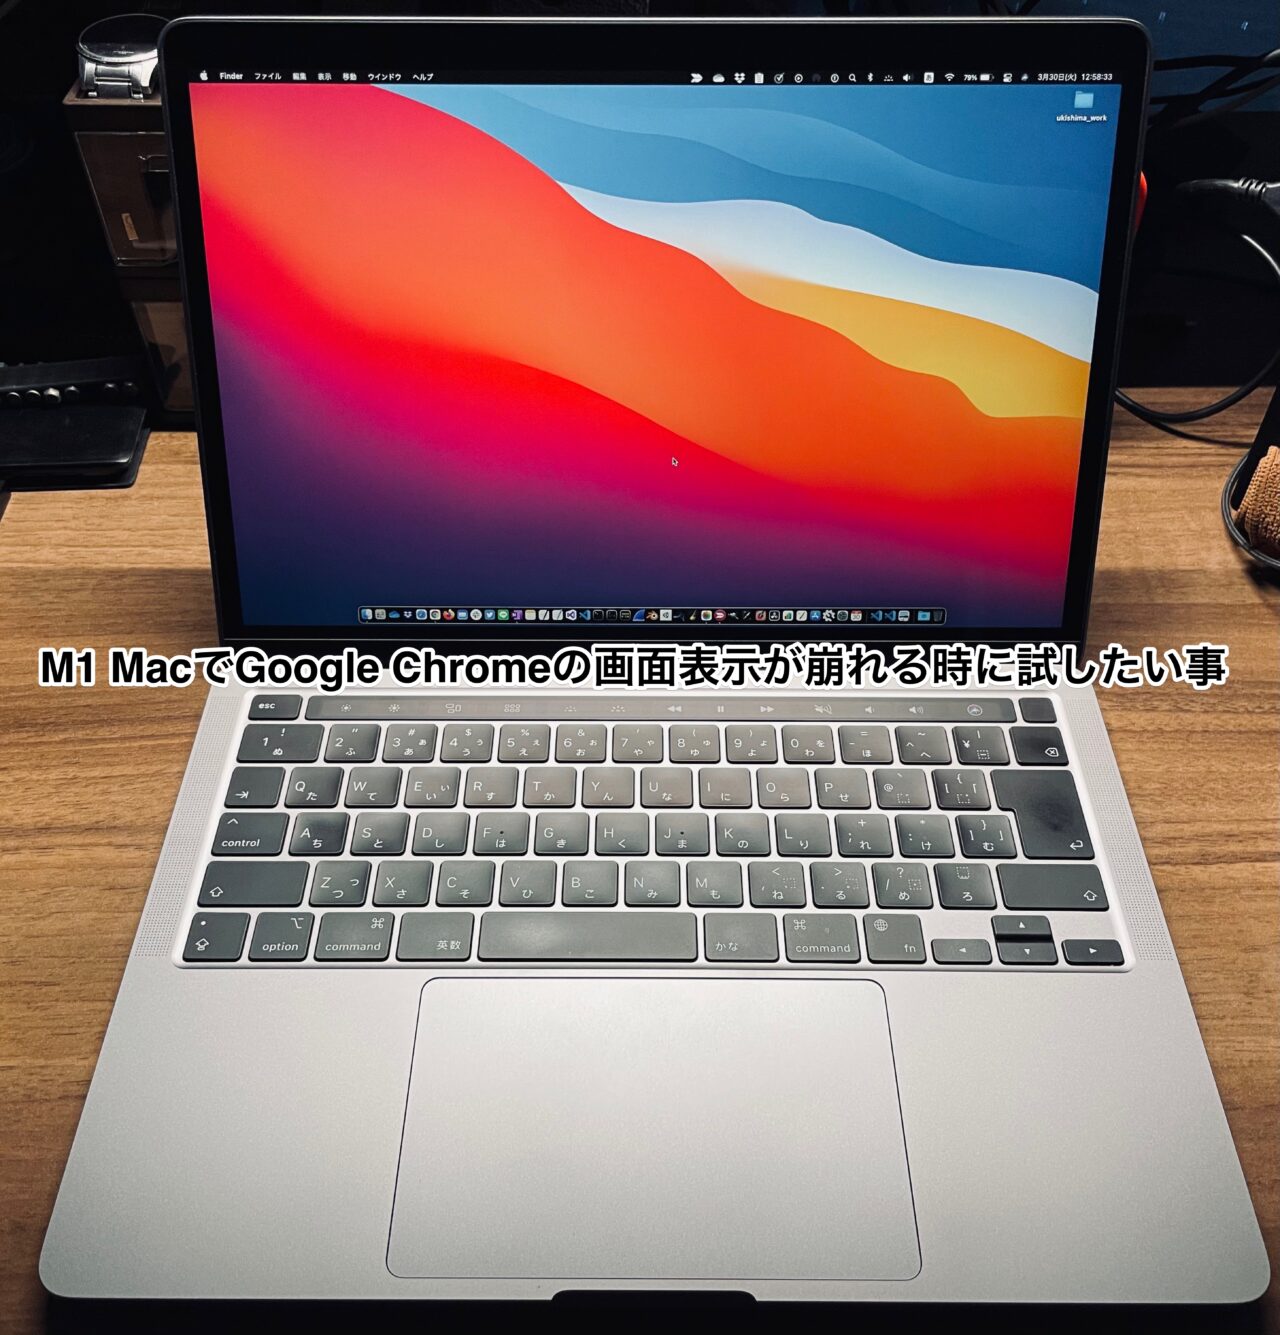 google chrome for macbook m1